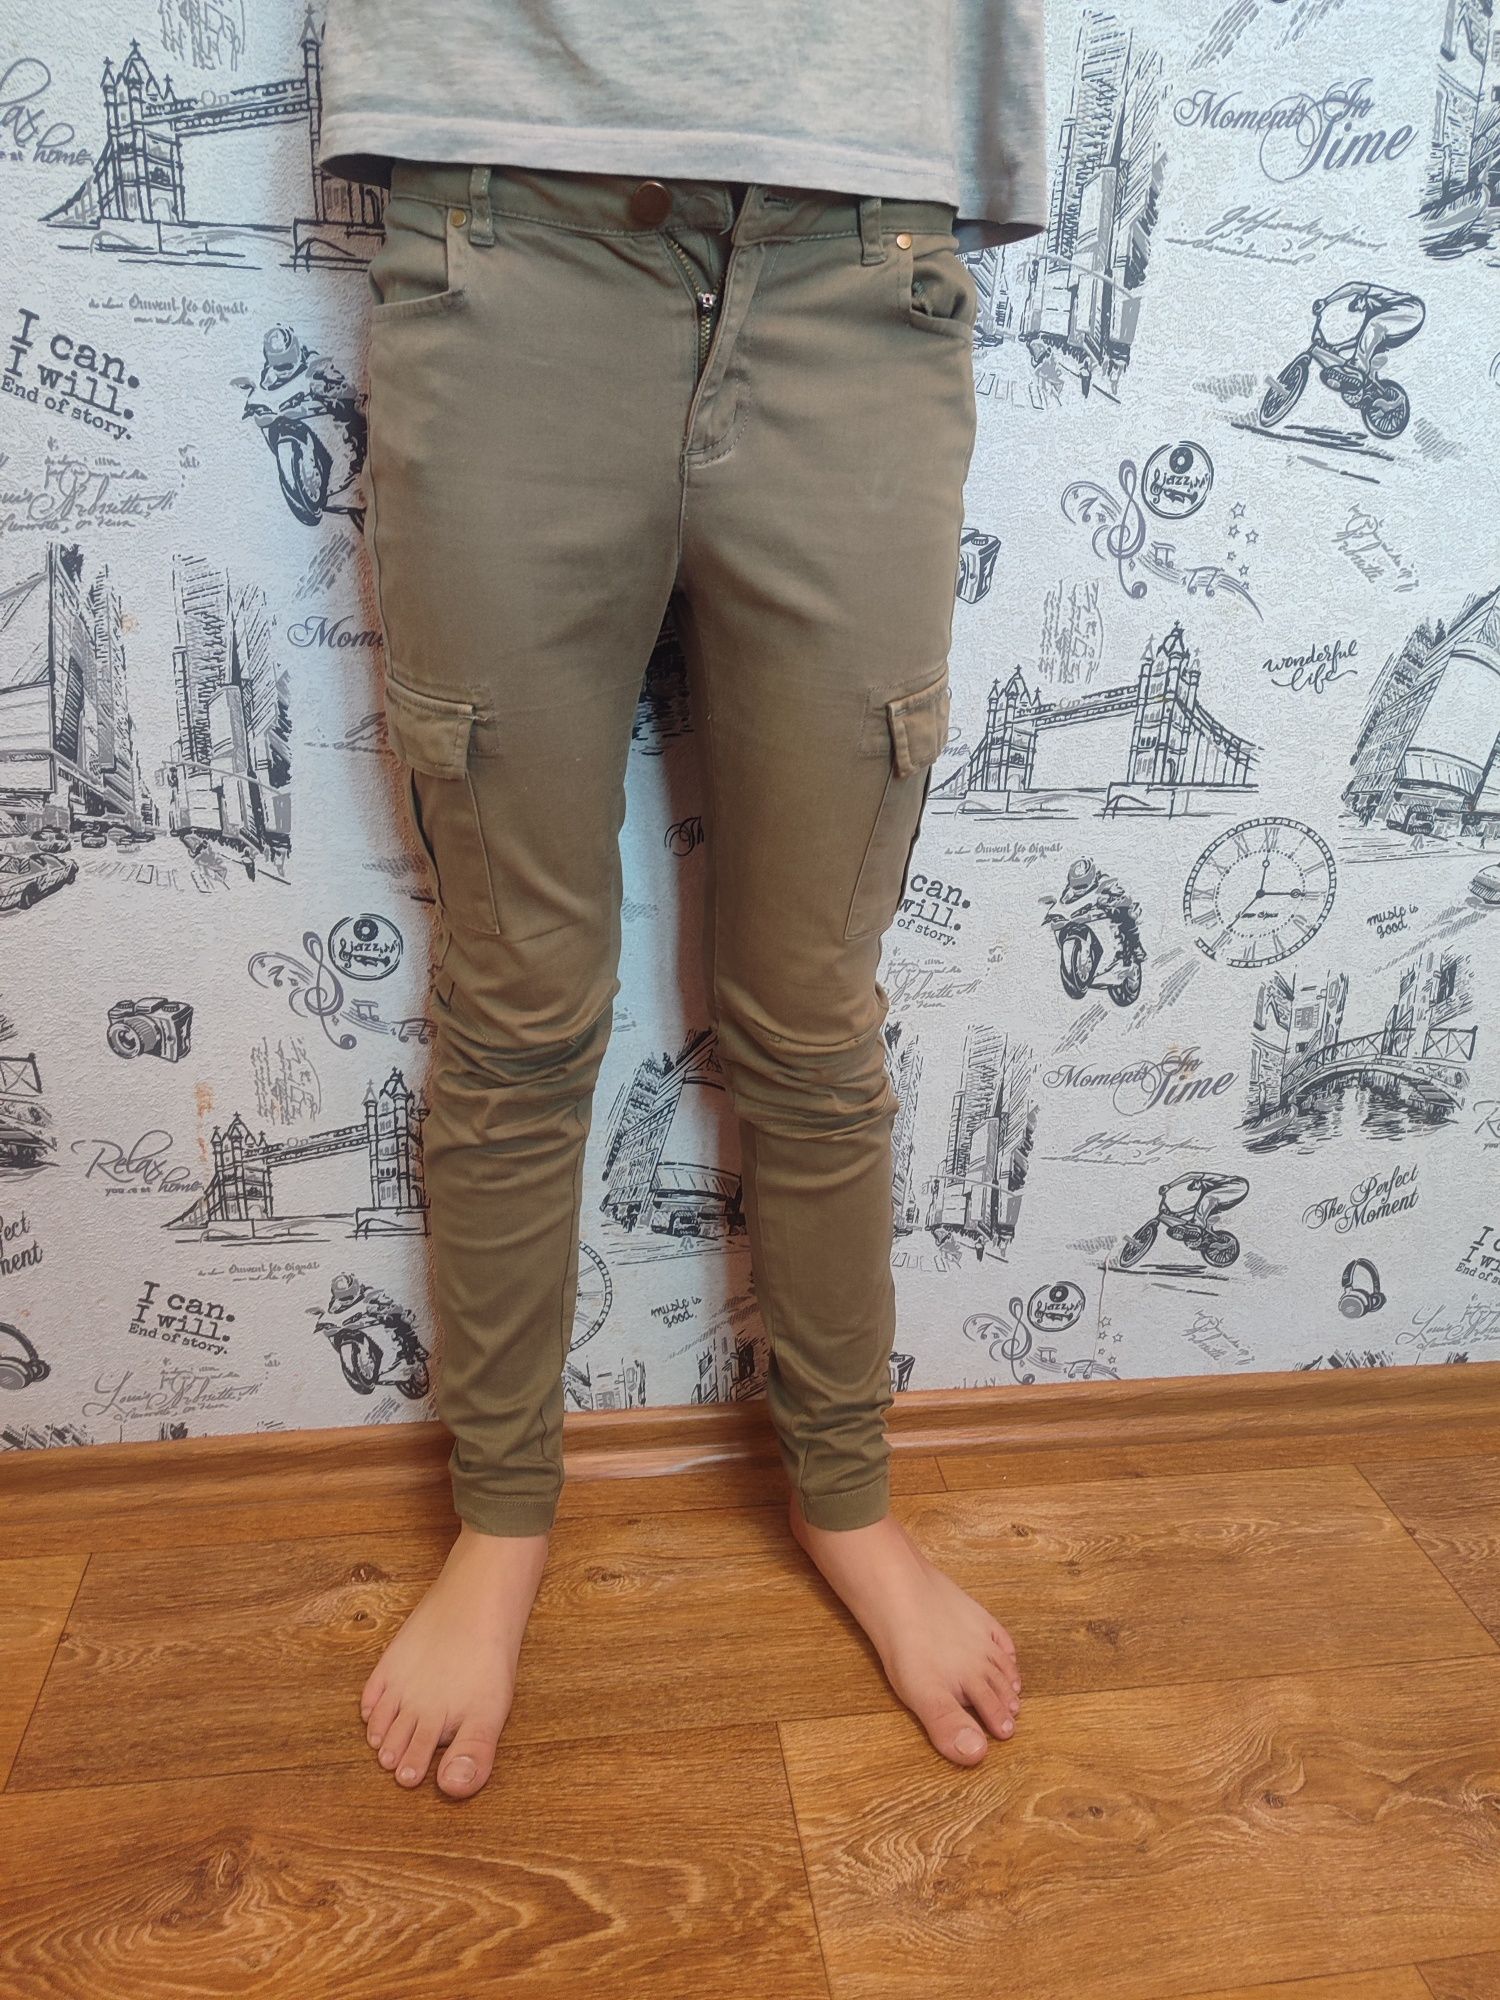 Джинсы 36 размер #штаны на мальчика подростка